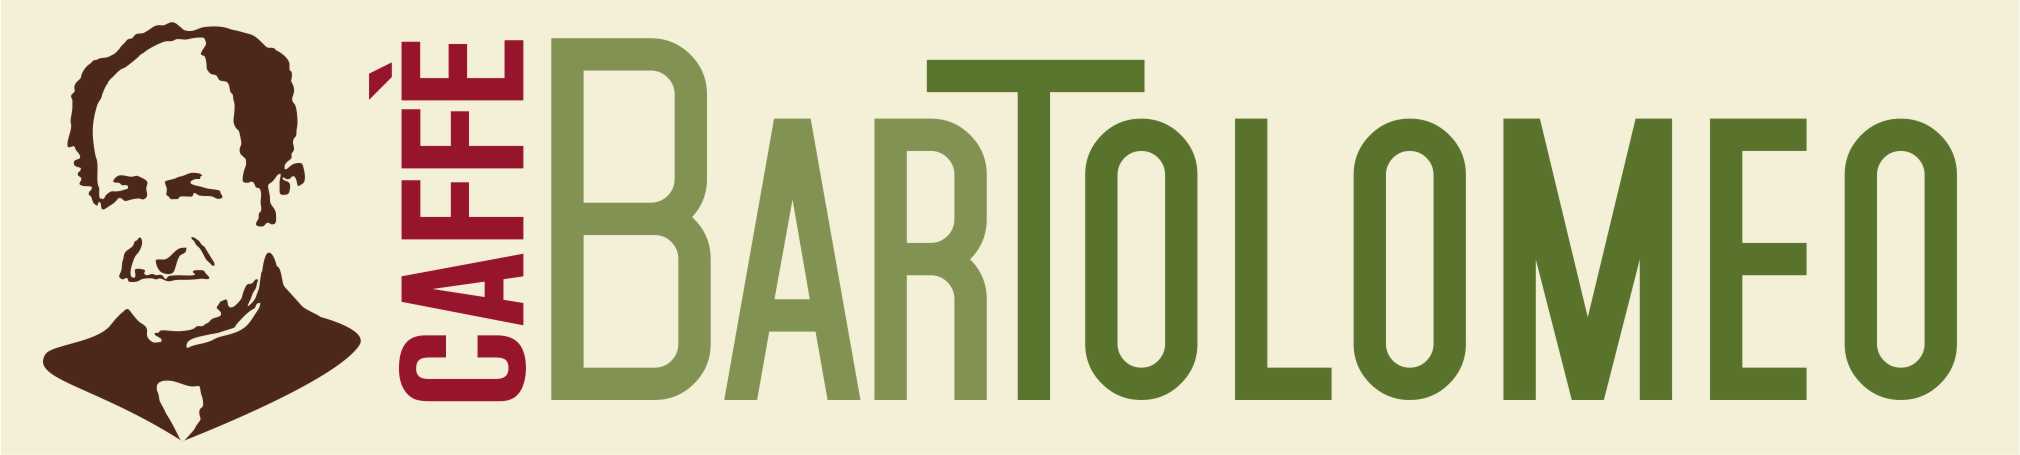 Logo Bartolomeo